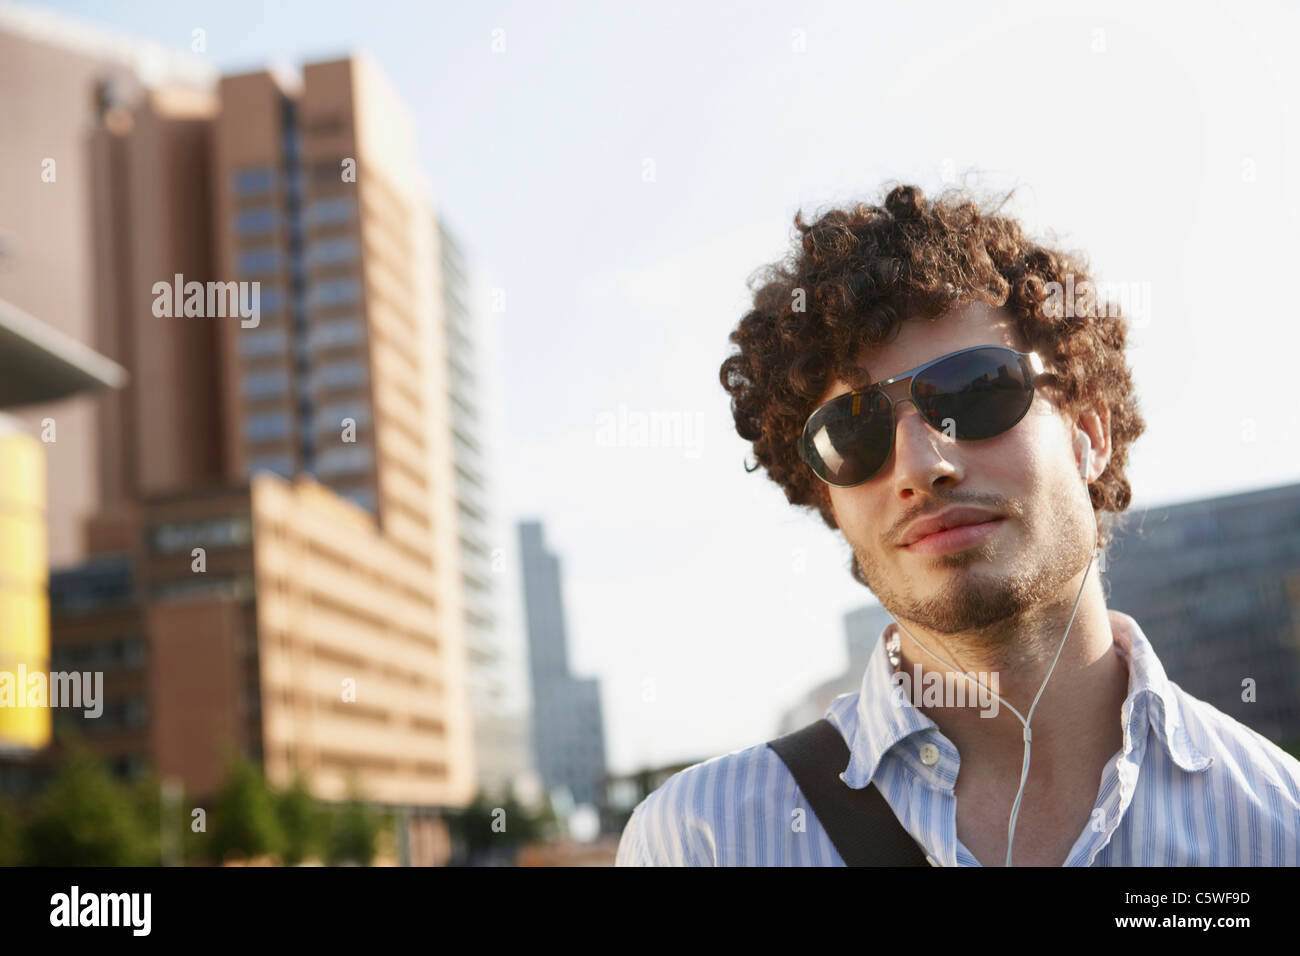 Germania Berlino, giovane uomo che indossa gli occhiali da sole, ritratto Foto Stock